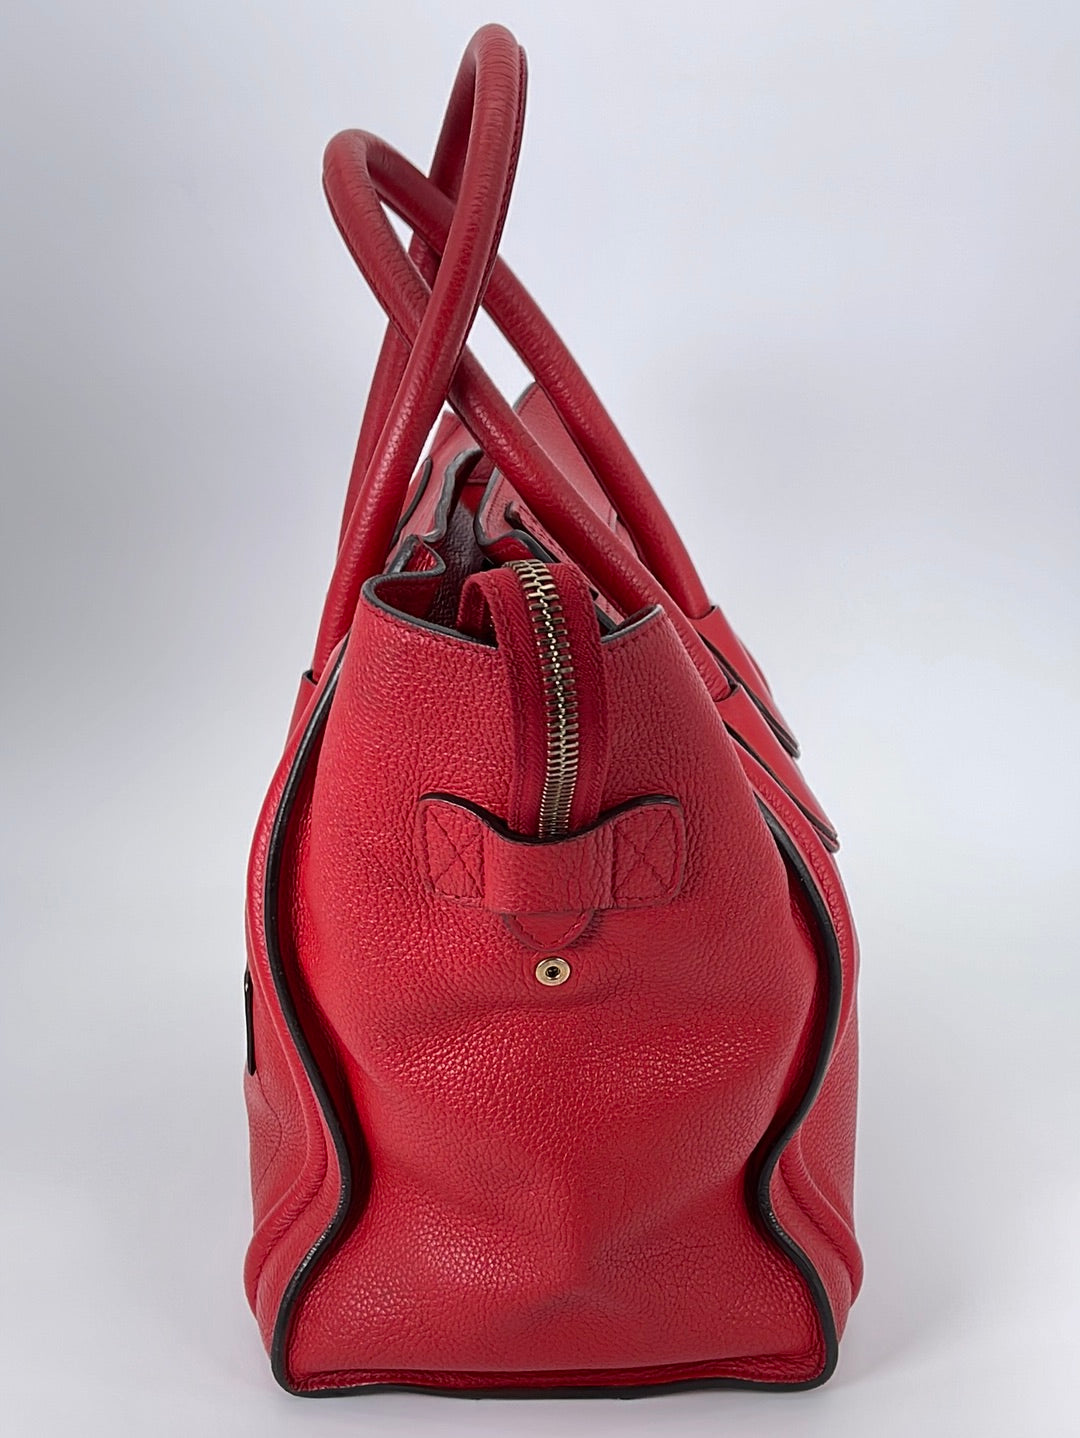 Preloved Celine Red Luggage Handbag SVP0132SUP0132 031323  *** DEAL ** - $600 OFF